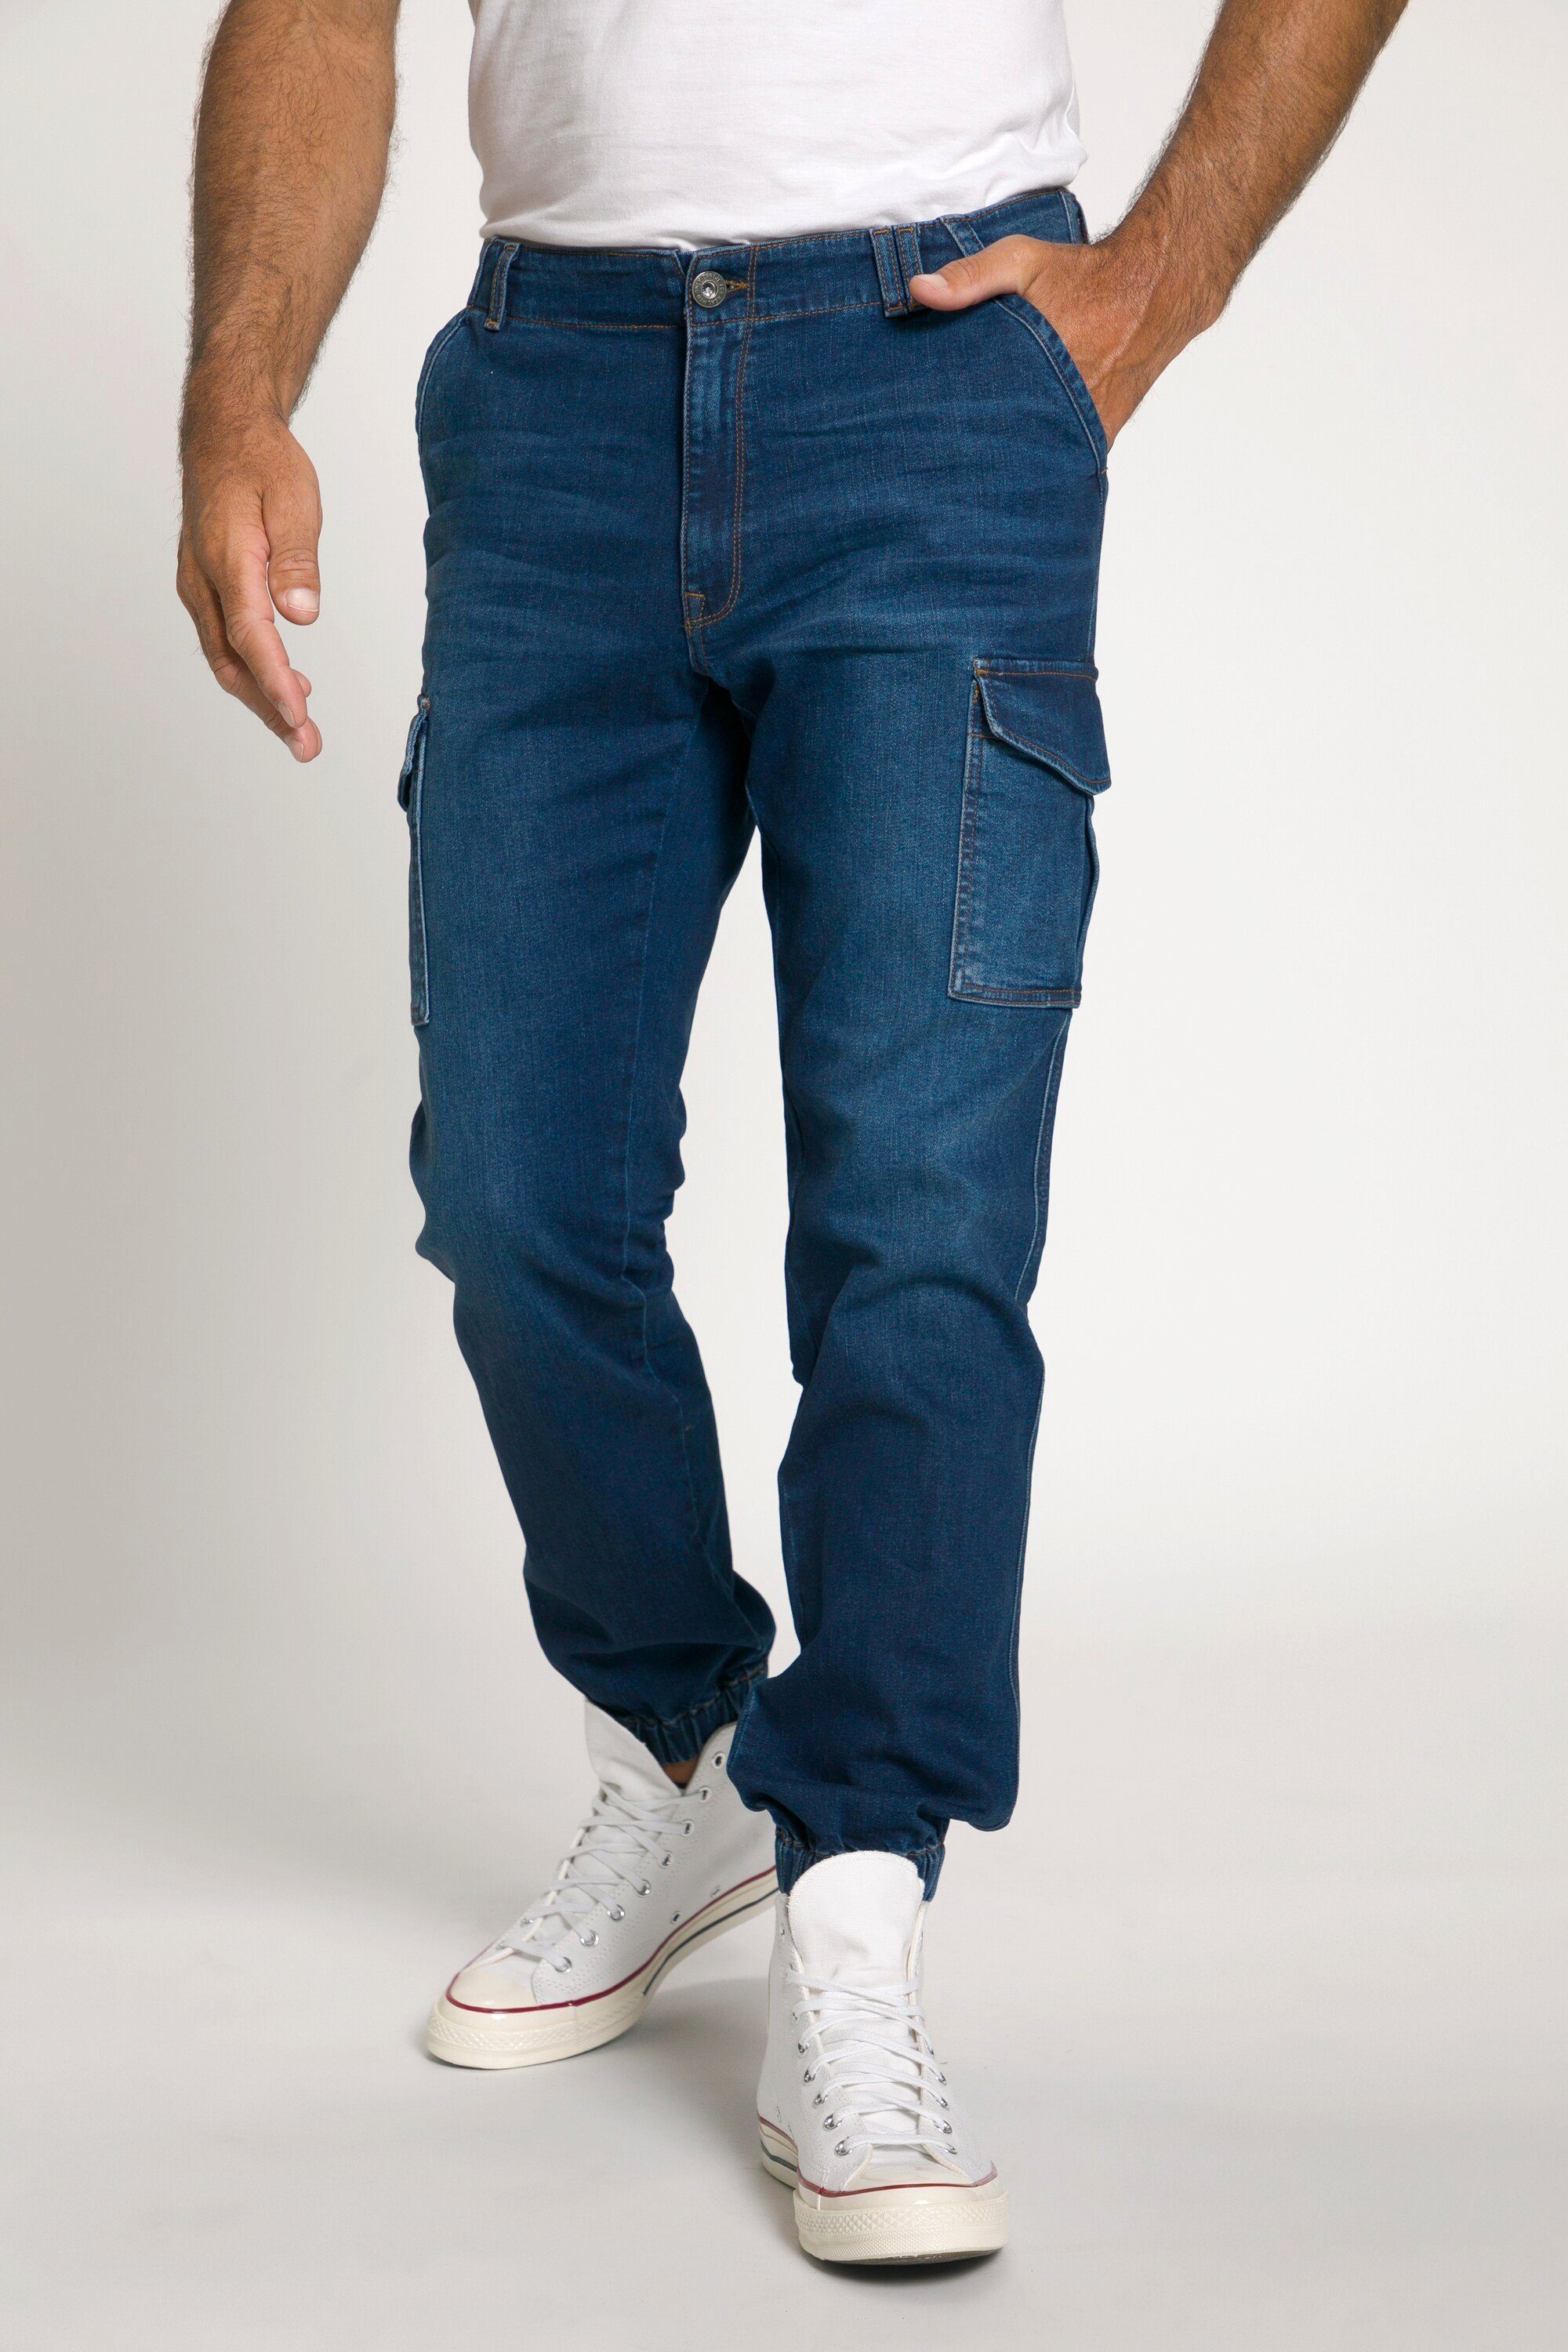 JP1880 Denim 5-Pocket-Jeans 5-Pocket Cargo-Jeans blue dark FLEXNAMIC® denim